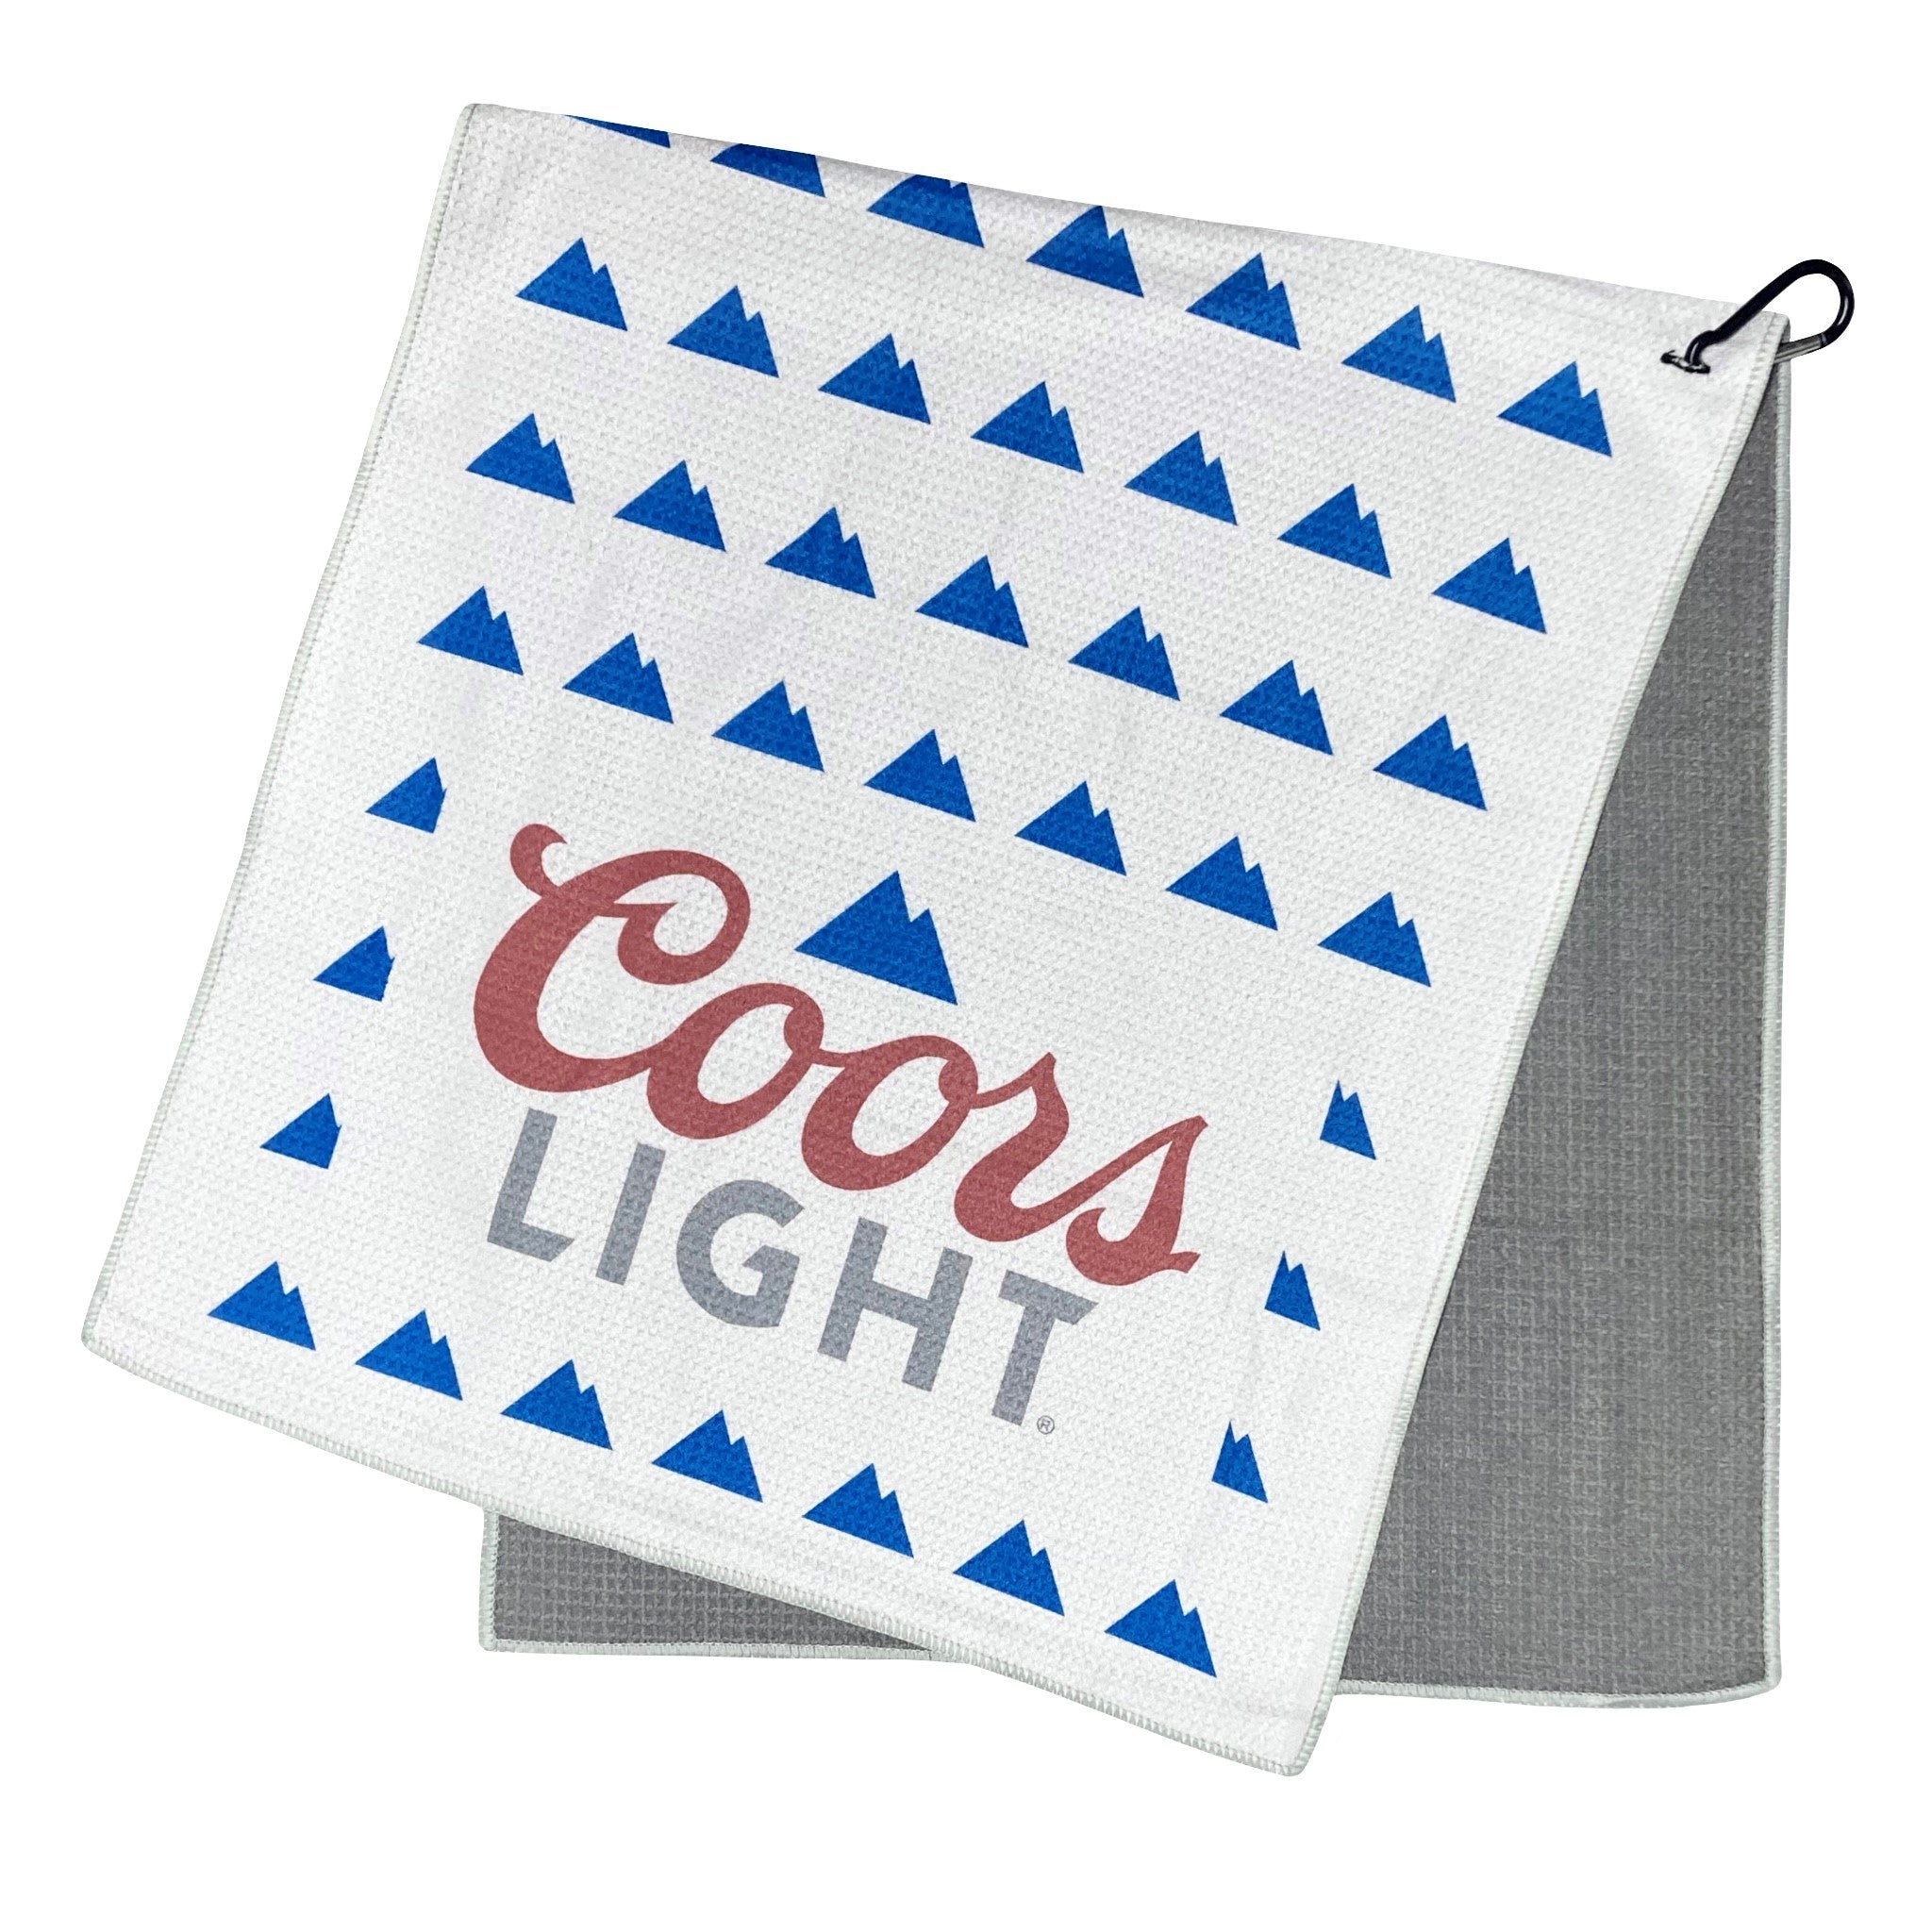 Golf Ditty Bag – Coors Light Shop